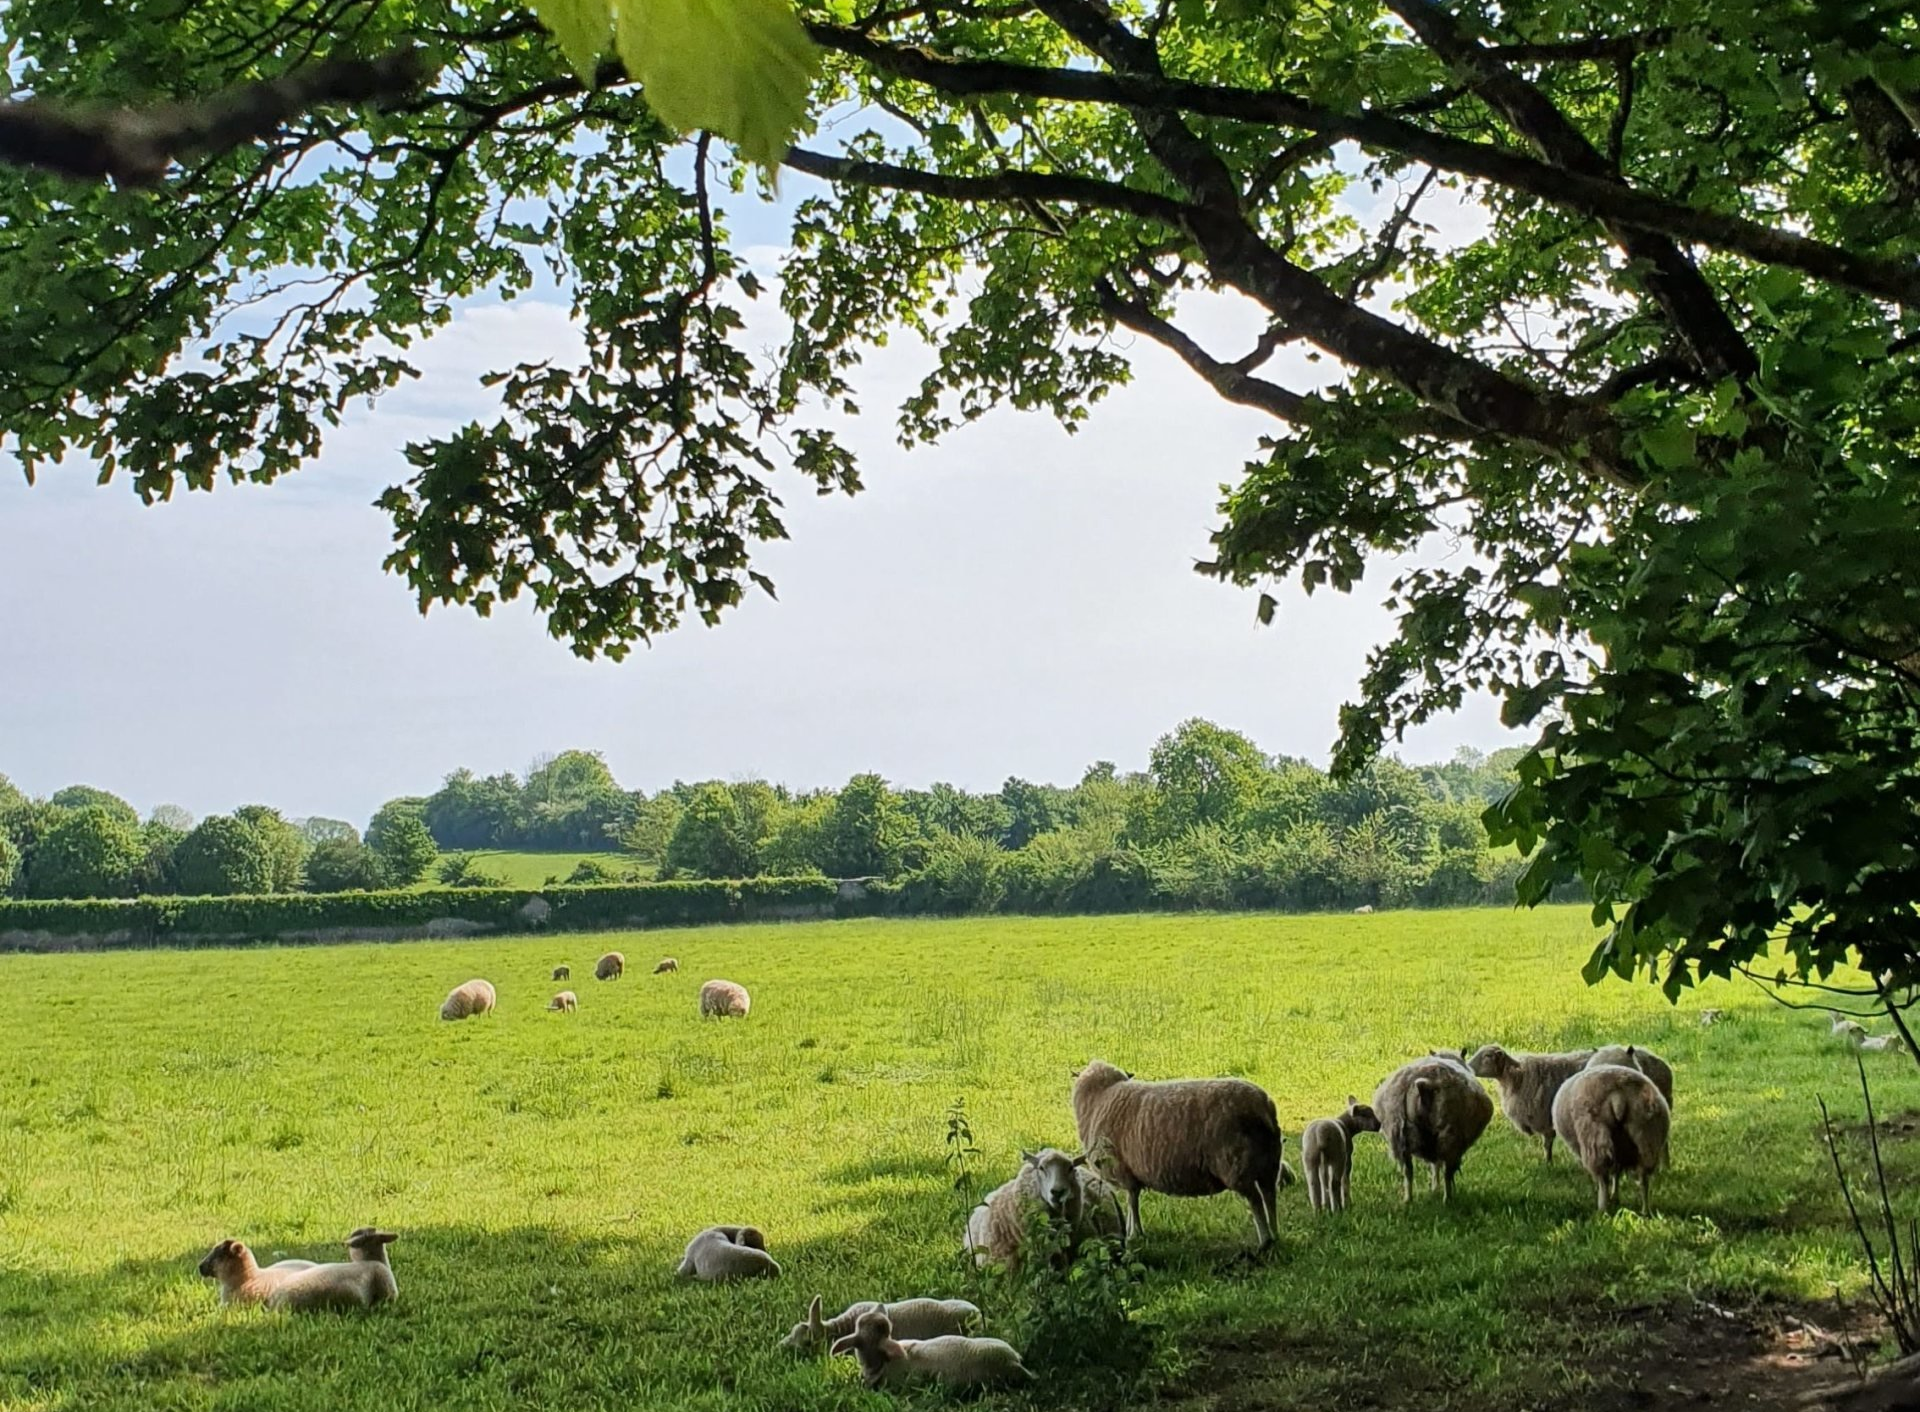 Sheep in Devon field